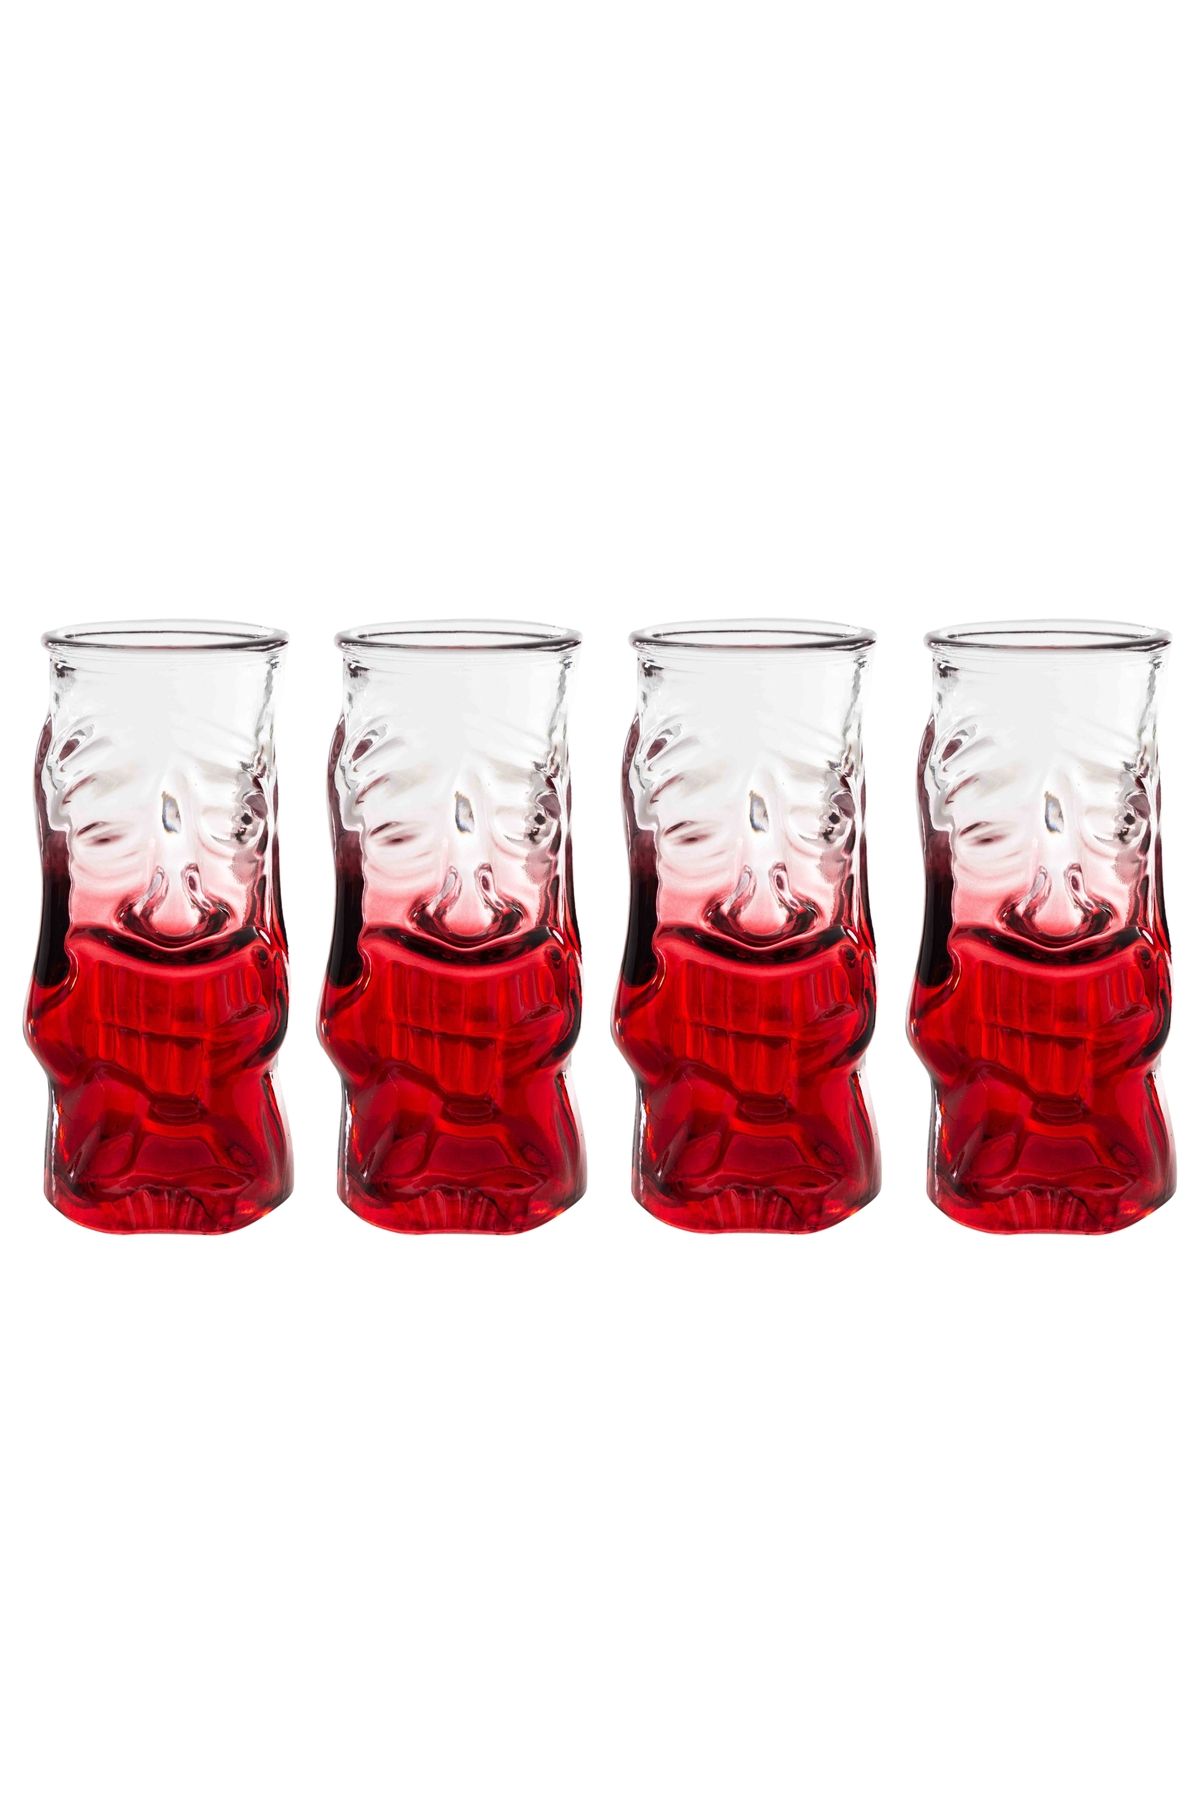 Mudo Concept Tıkı Kokteyl Bardağı Kırmızı 4'lü 290 ml